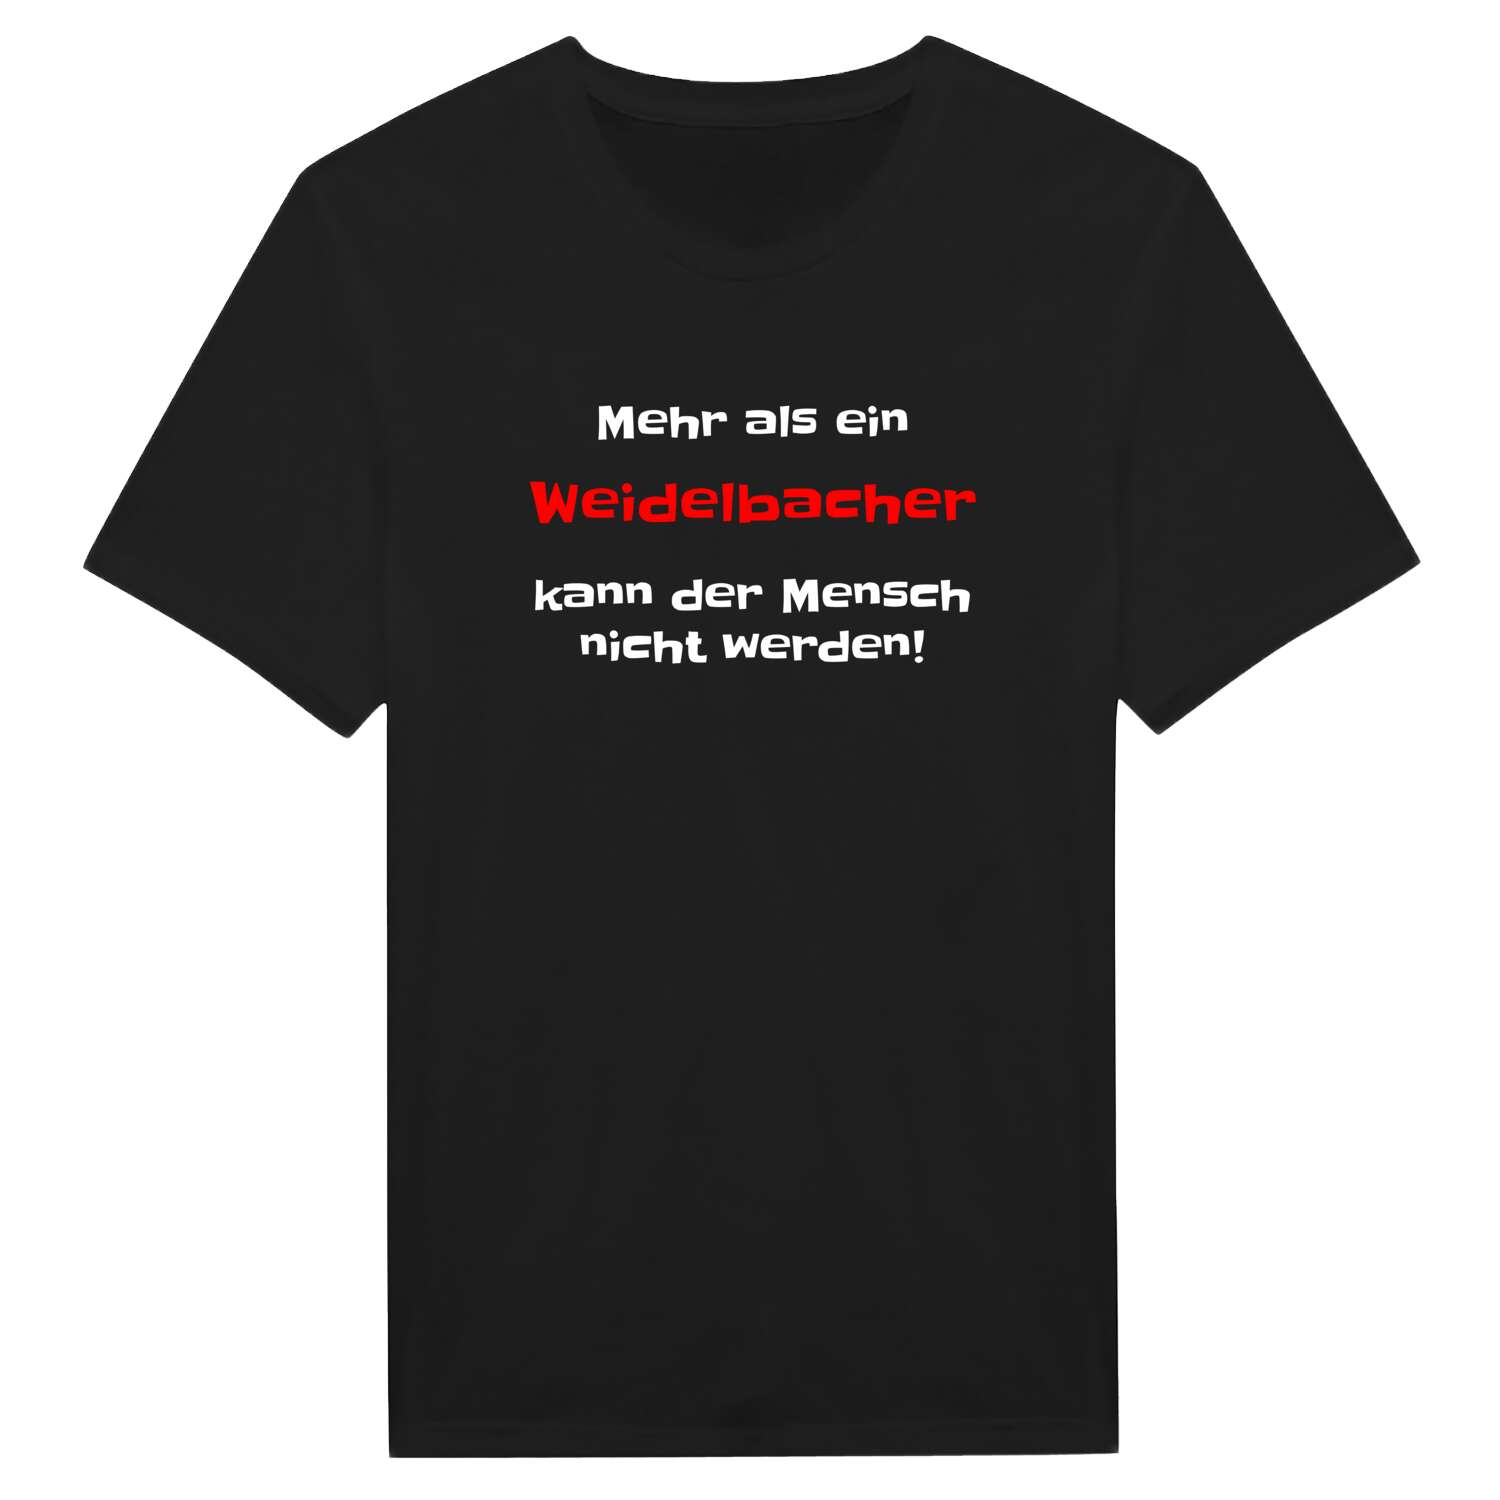 Weidelbach T-Shirt »Mehr als ein«